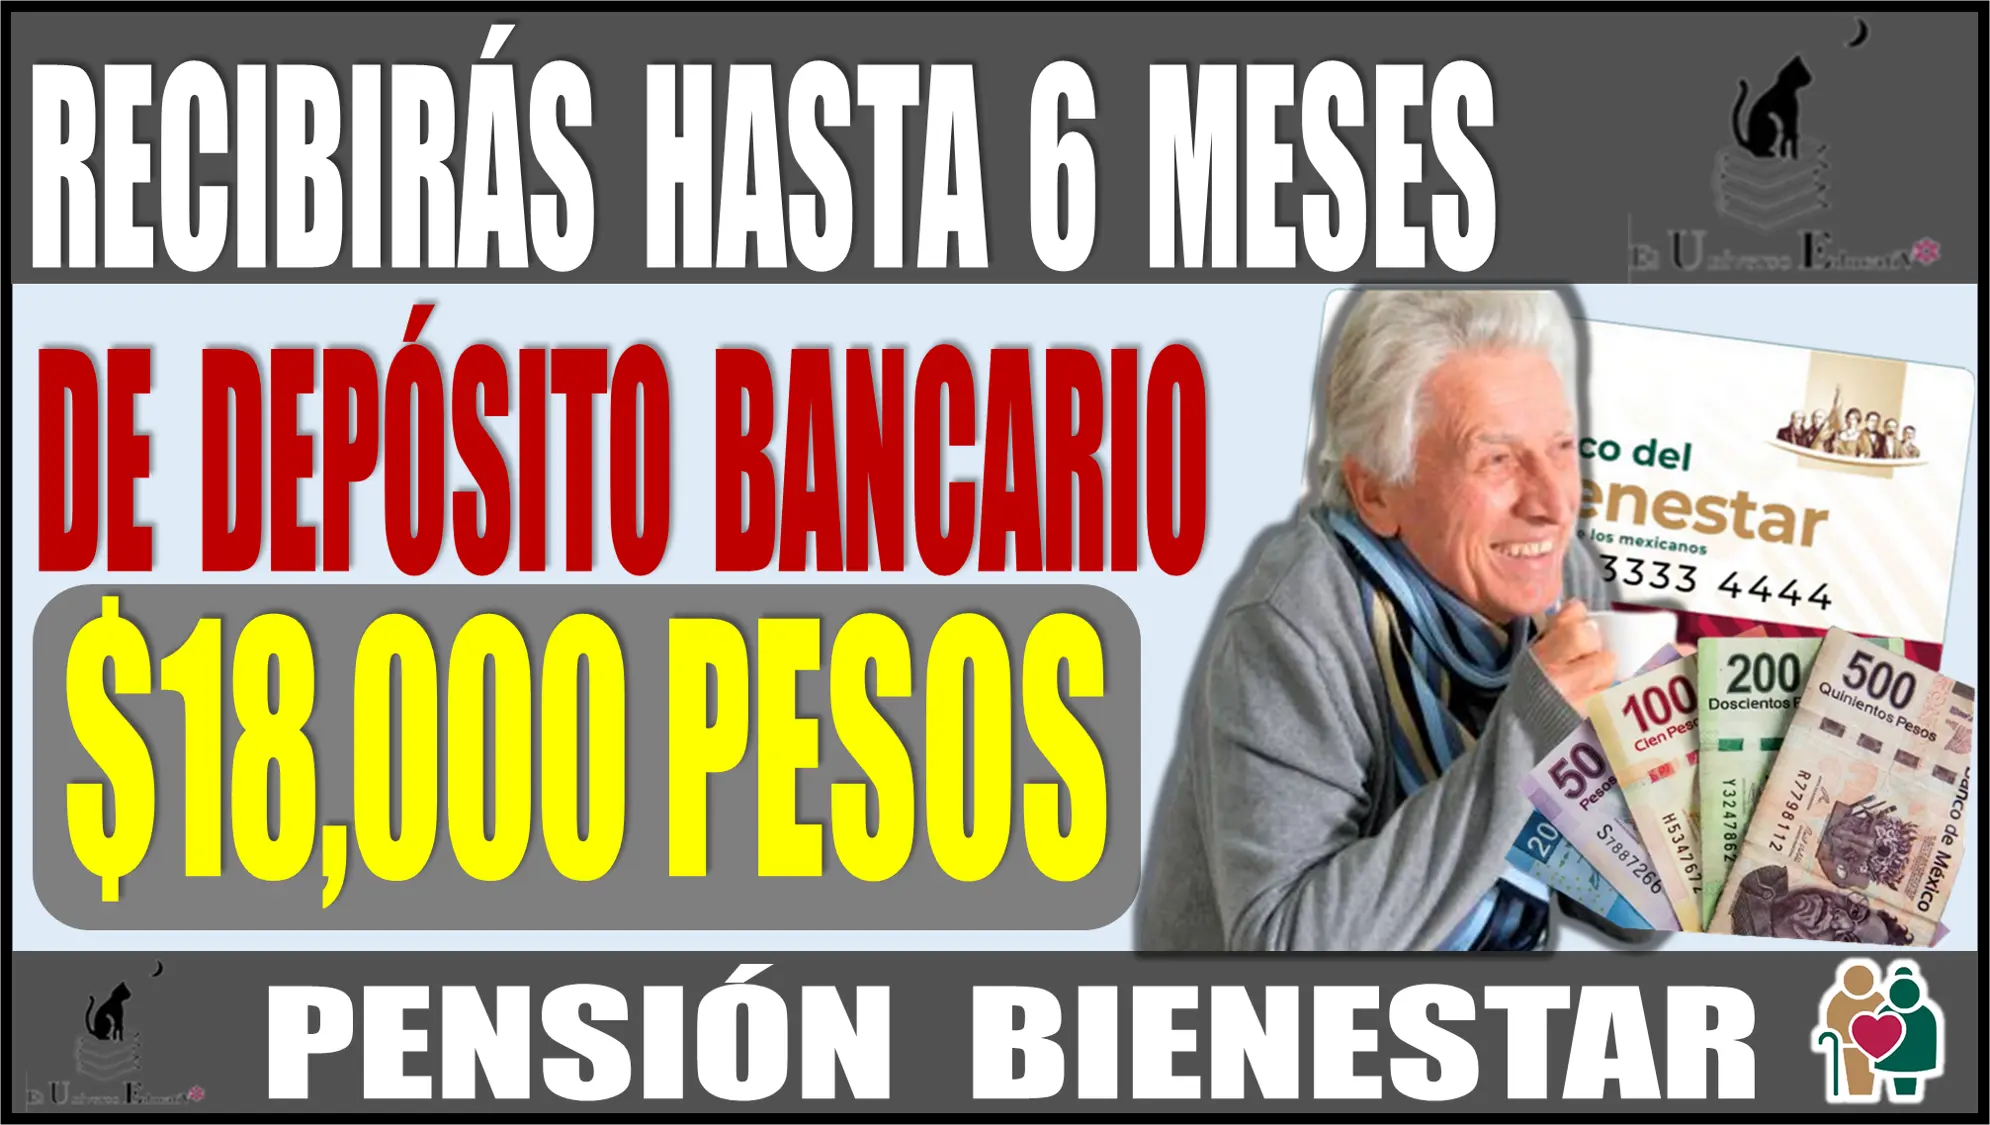 RECIBIRÁS HASTA 6 MESES DE DEPÓSITO BANCARIO | $18,000 PESOS | PENSIÓN BIENESTAR